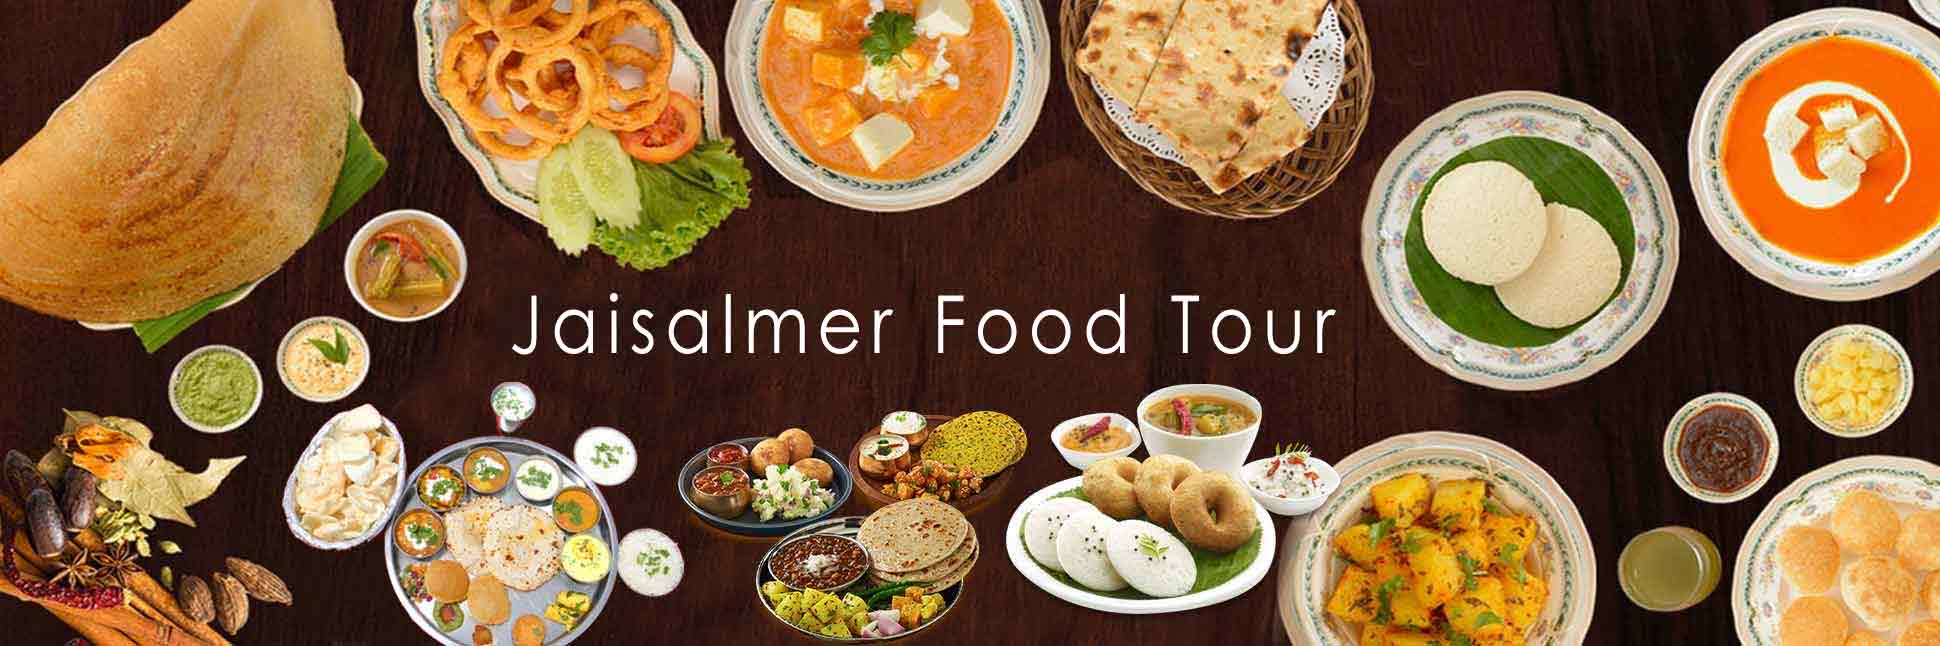 Jaisalmer Food Tour